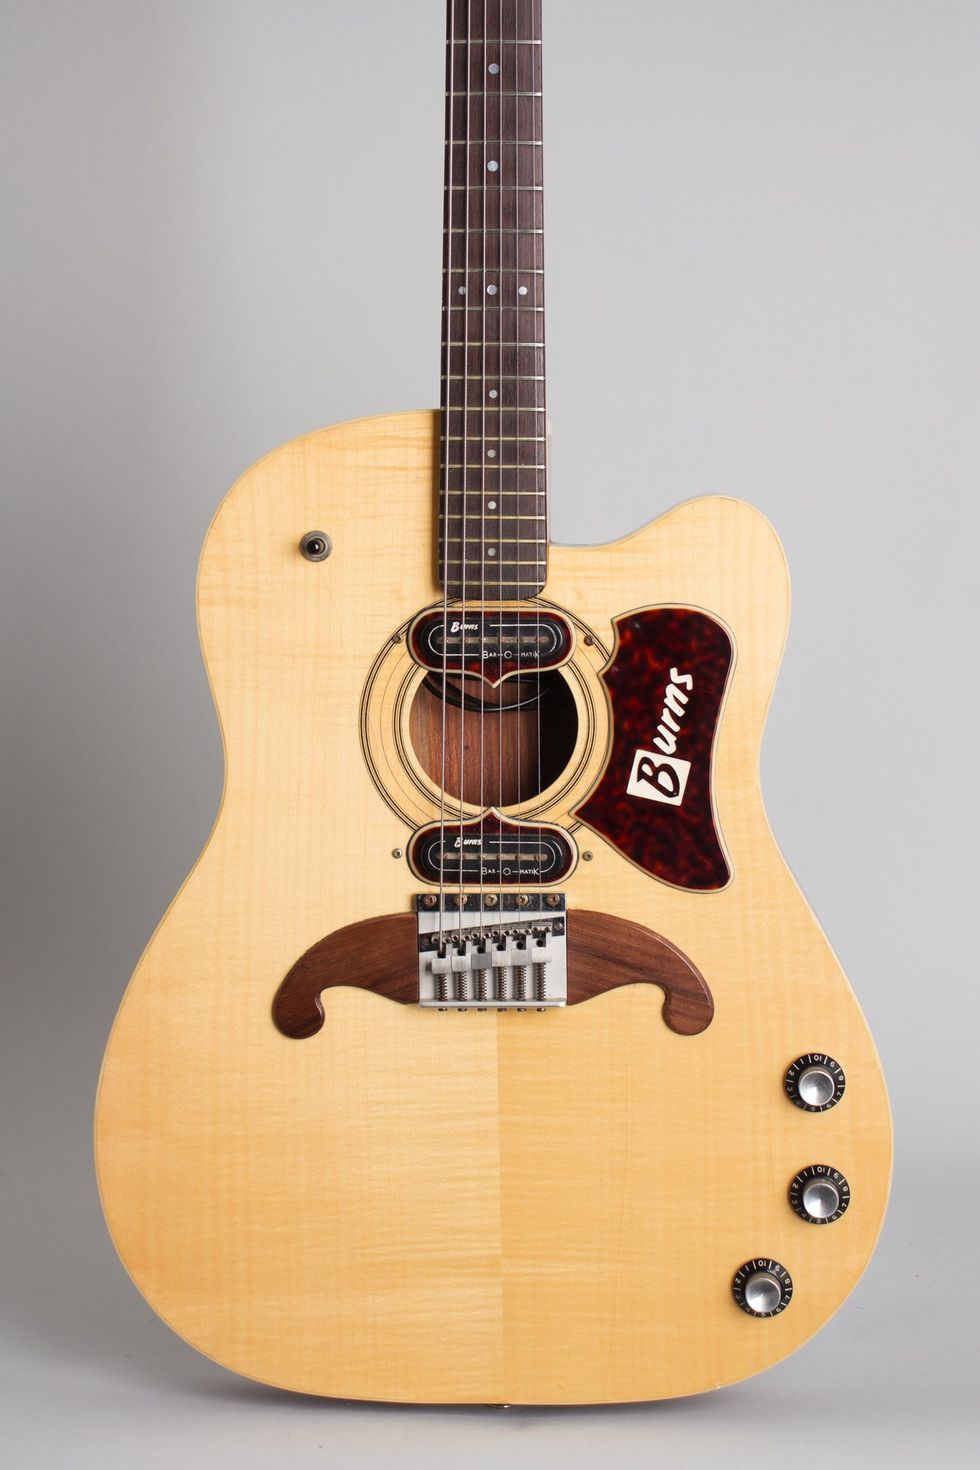 Burns' Virginian guitar